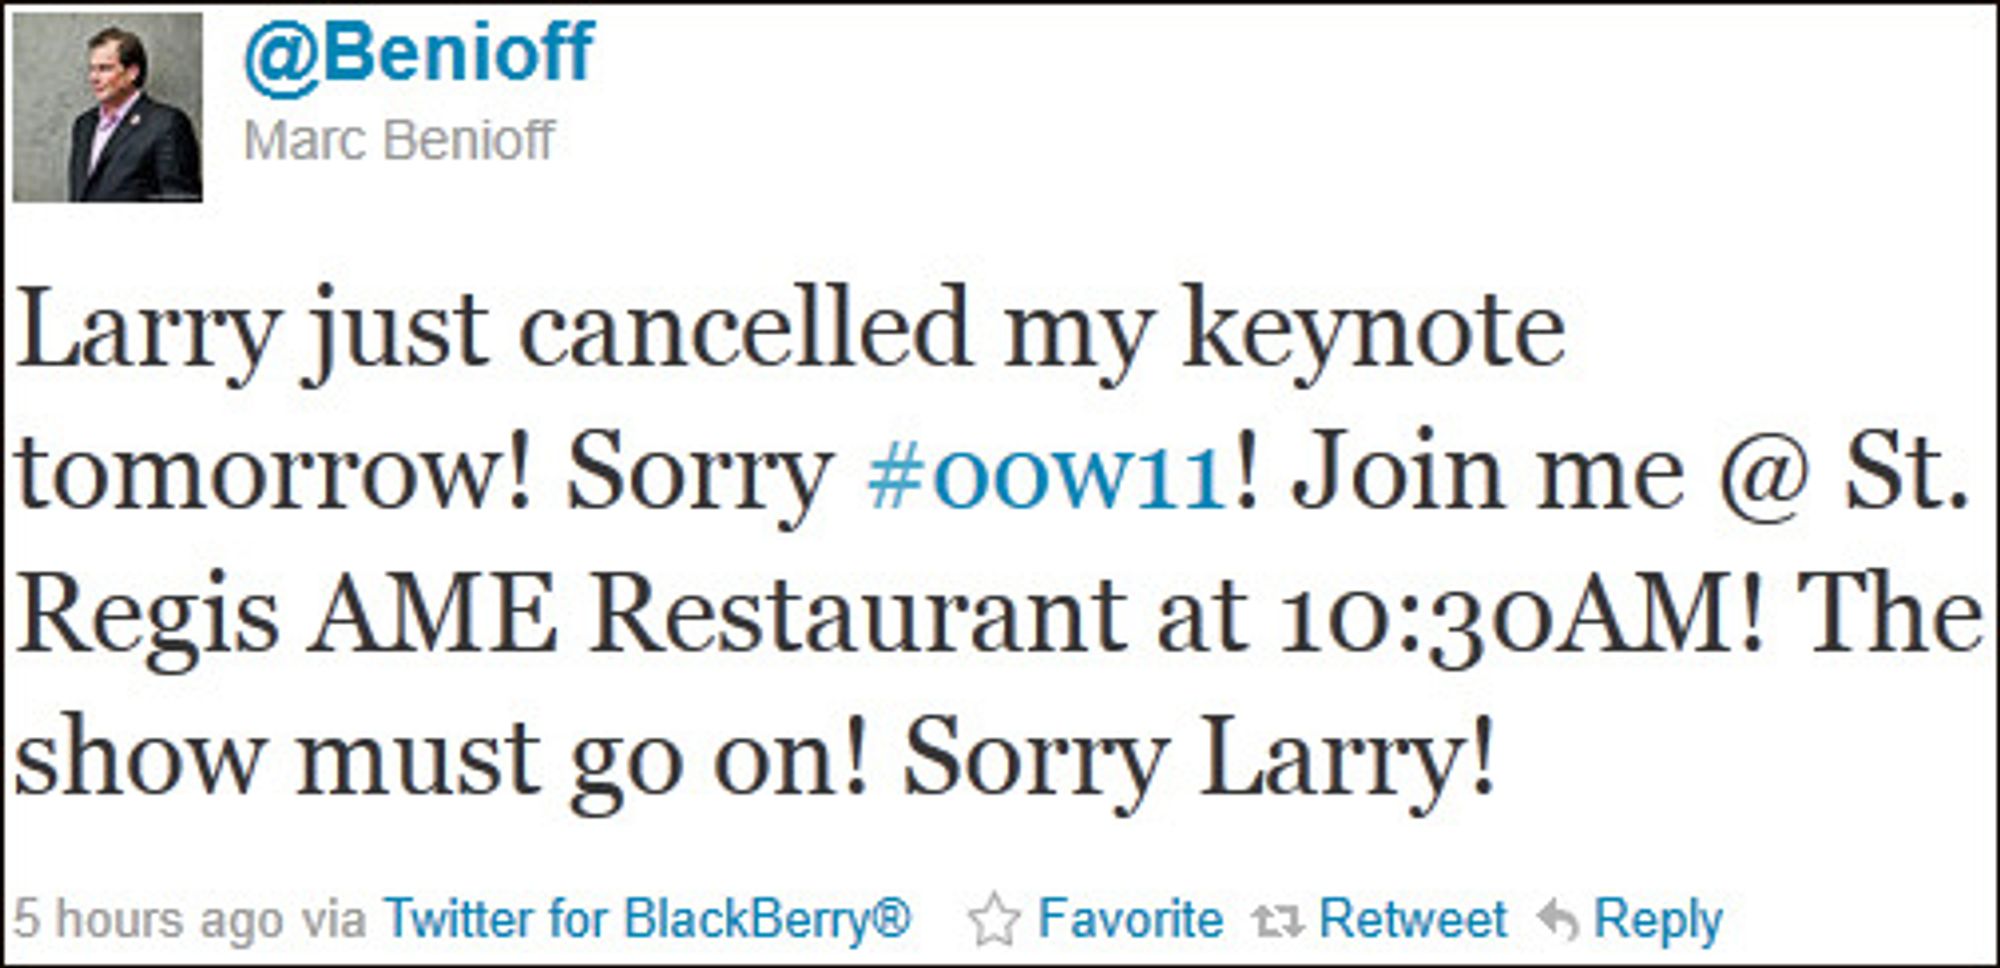 The show must go on: Sorry Larry, skriver SalesOffice-sjefen i en twittermelding.